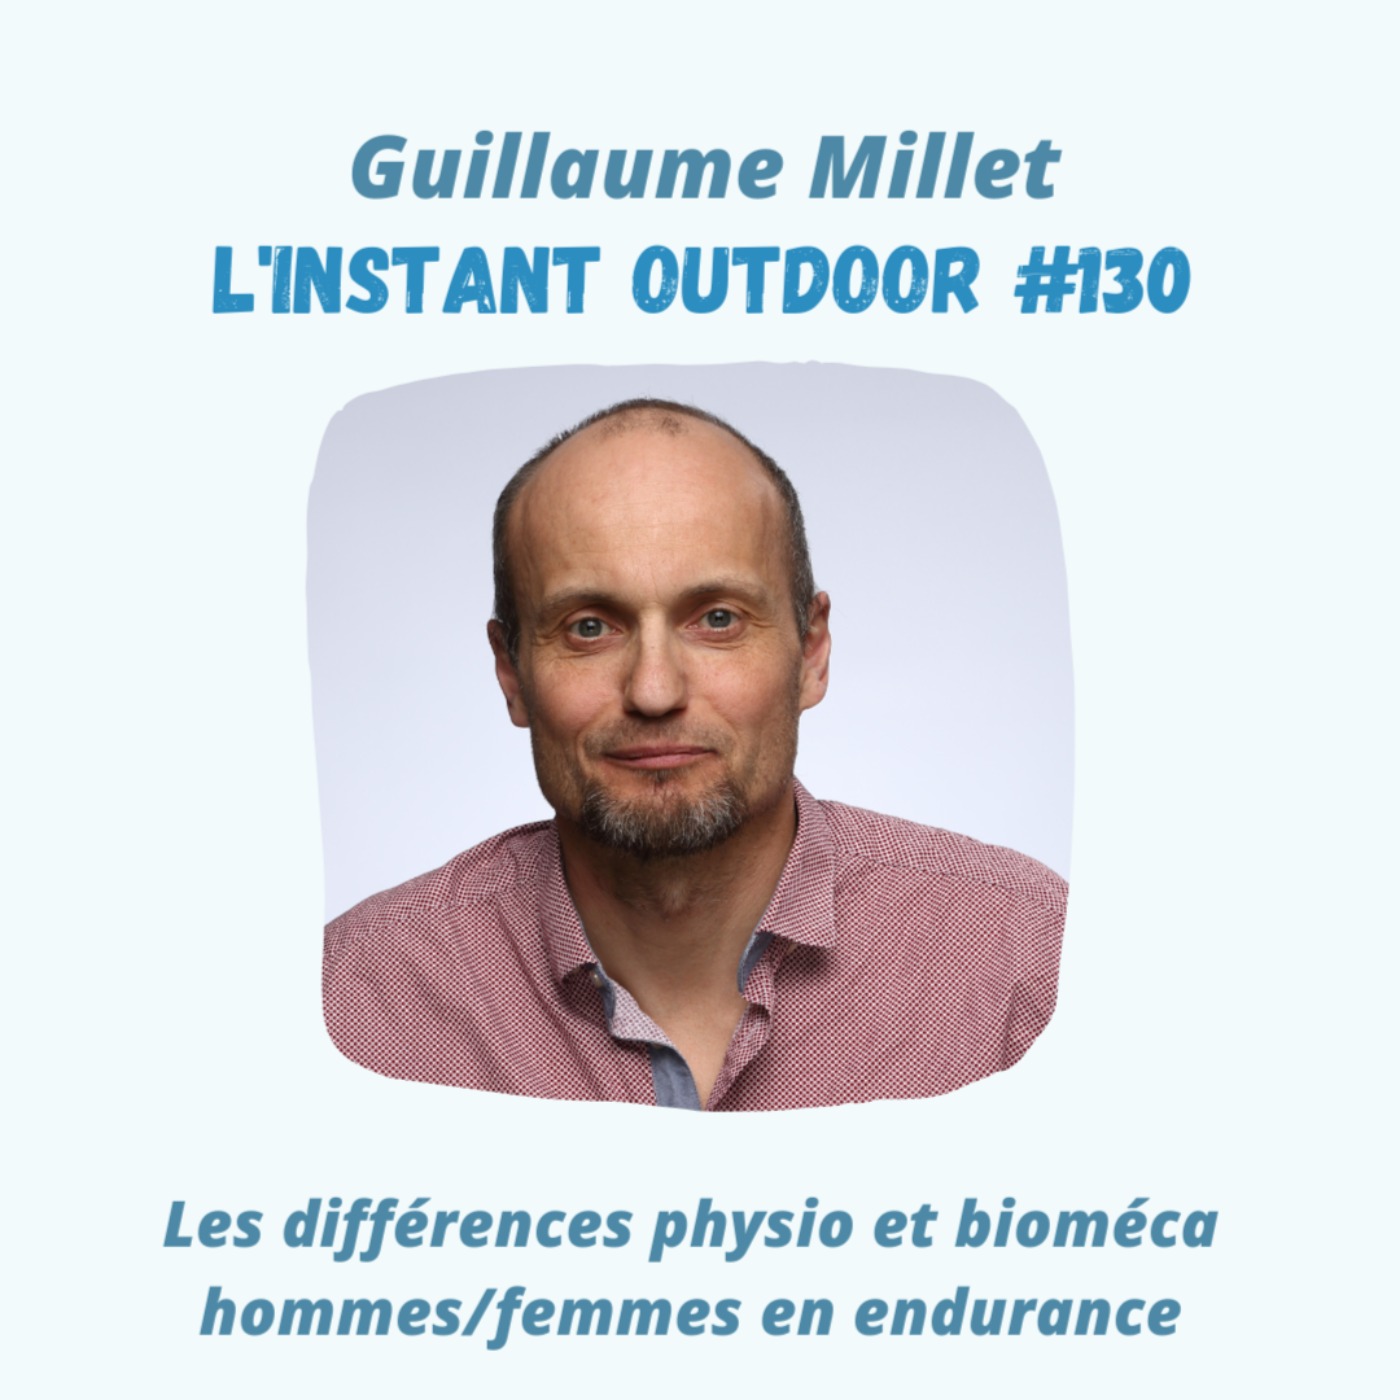 Guillaume Millet - Les différences physio et bioméca hommes/femmes en endurance